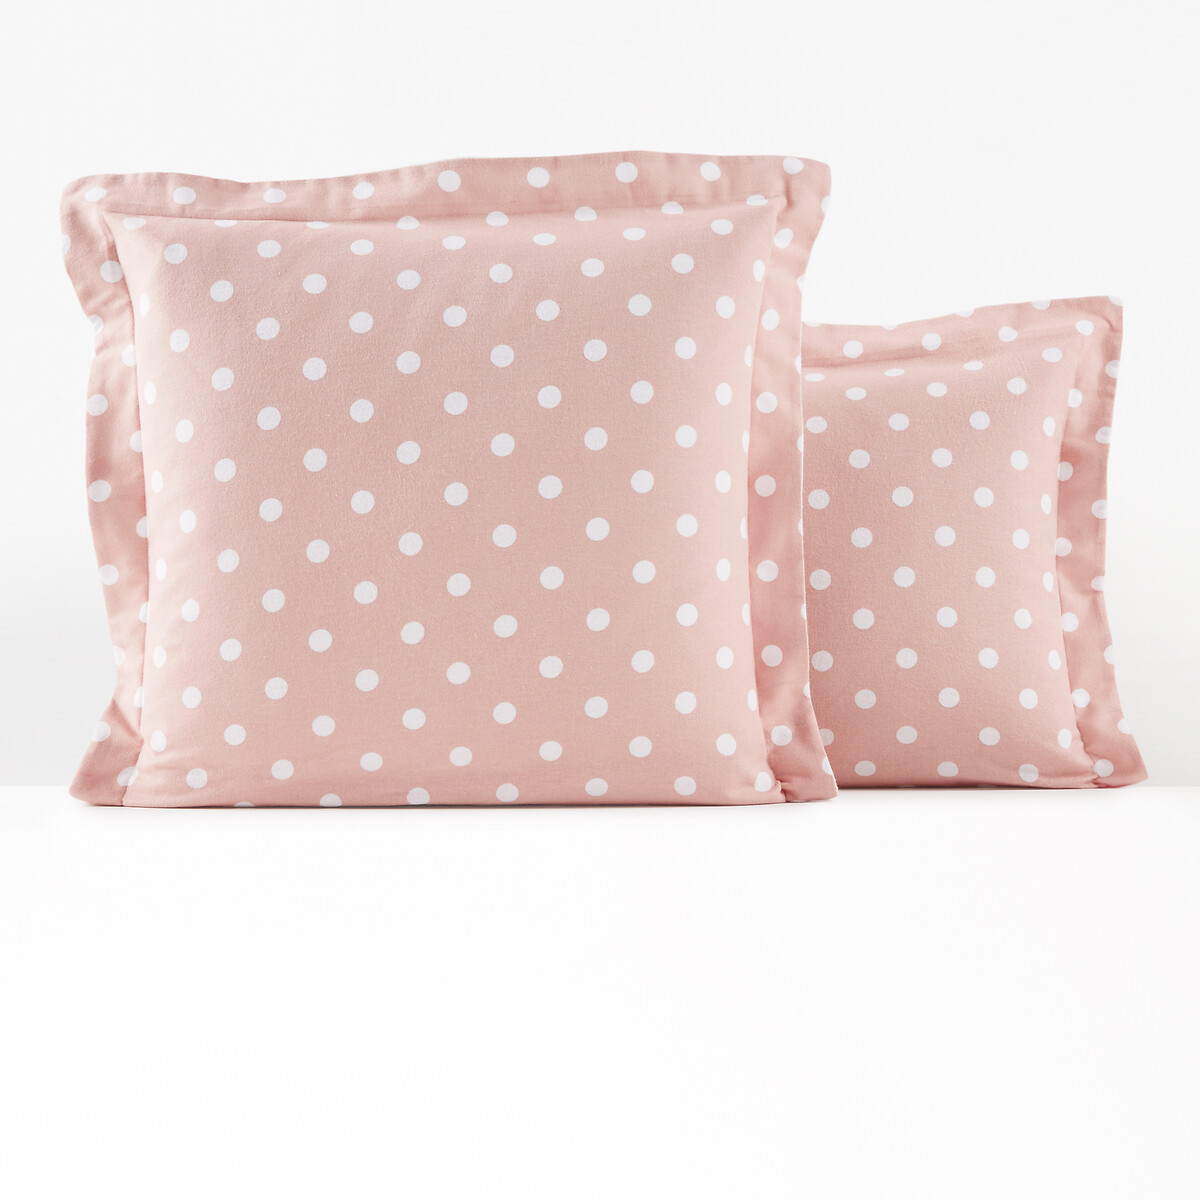 Наволочка из фланели с рисунком в горошек Clarisse 63 x 63 см розовый наволочка на подушку валик из фланели molgan 85 x 185 см другие